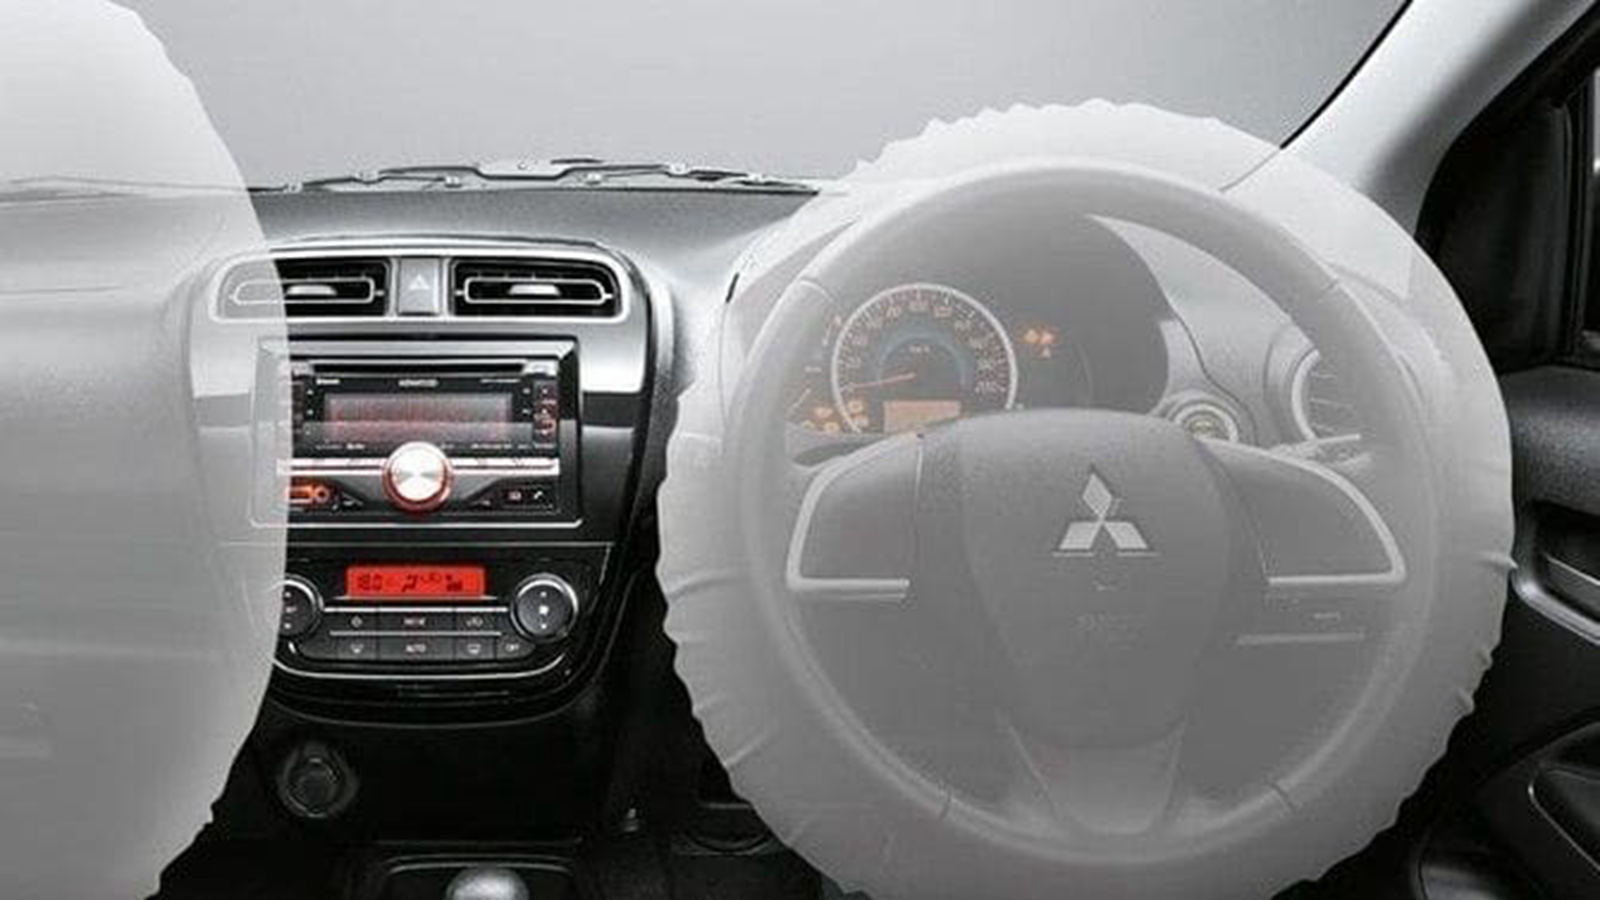 2014 Mitsubishi Attrage GS 1.2L Interior 002